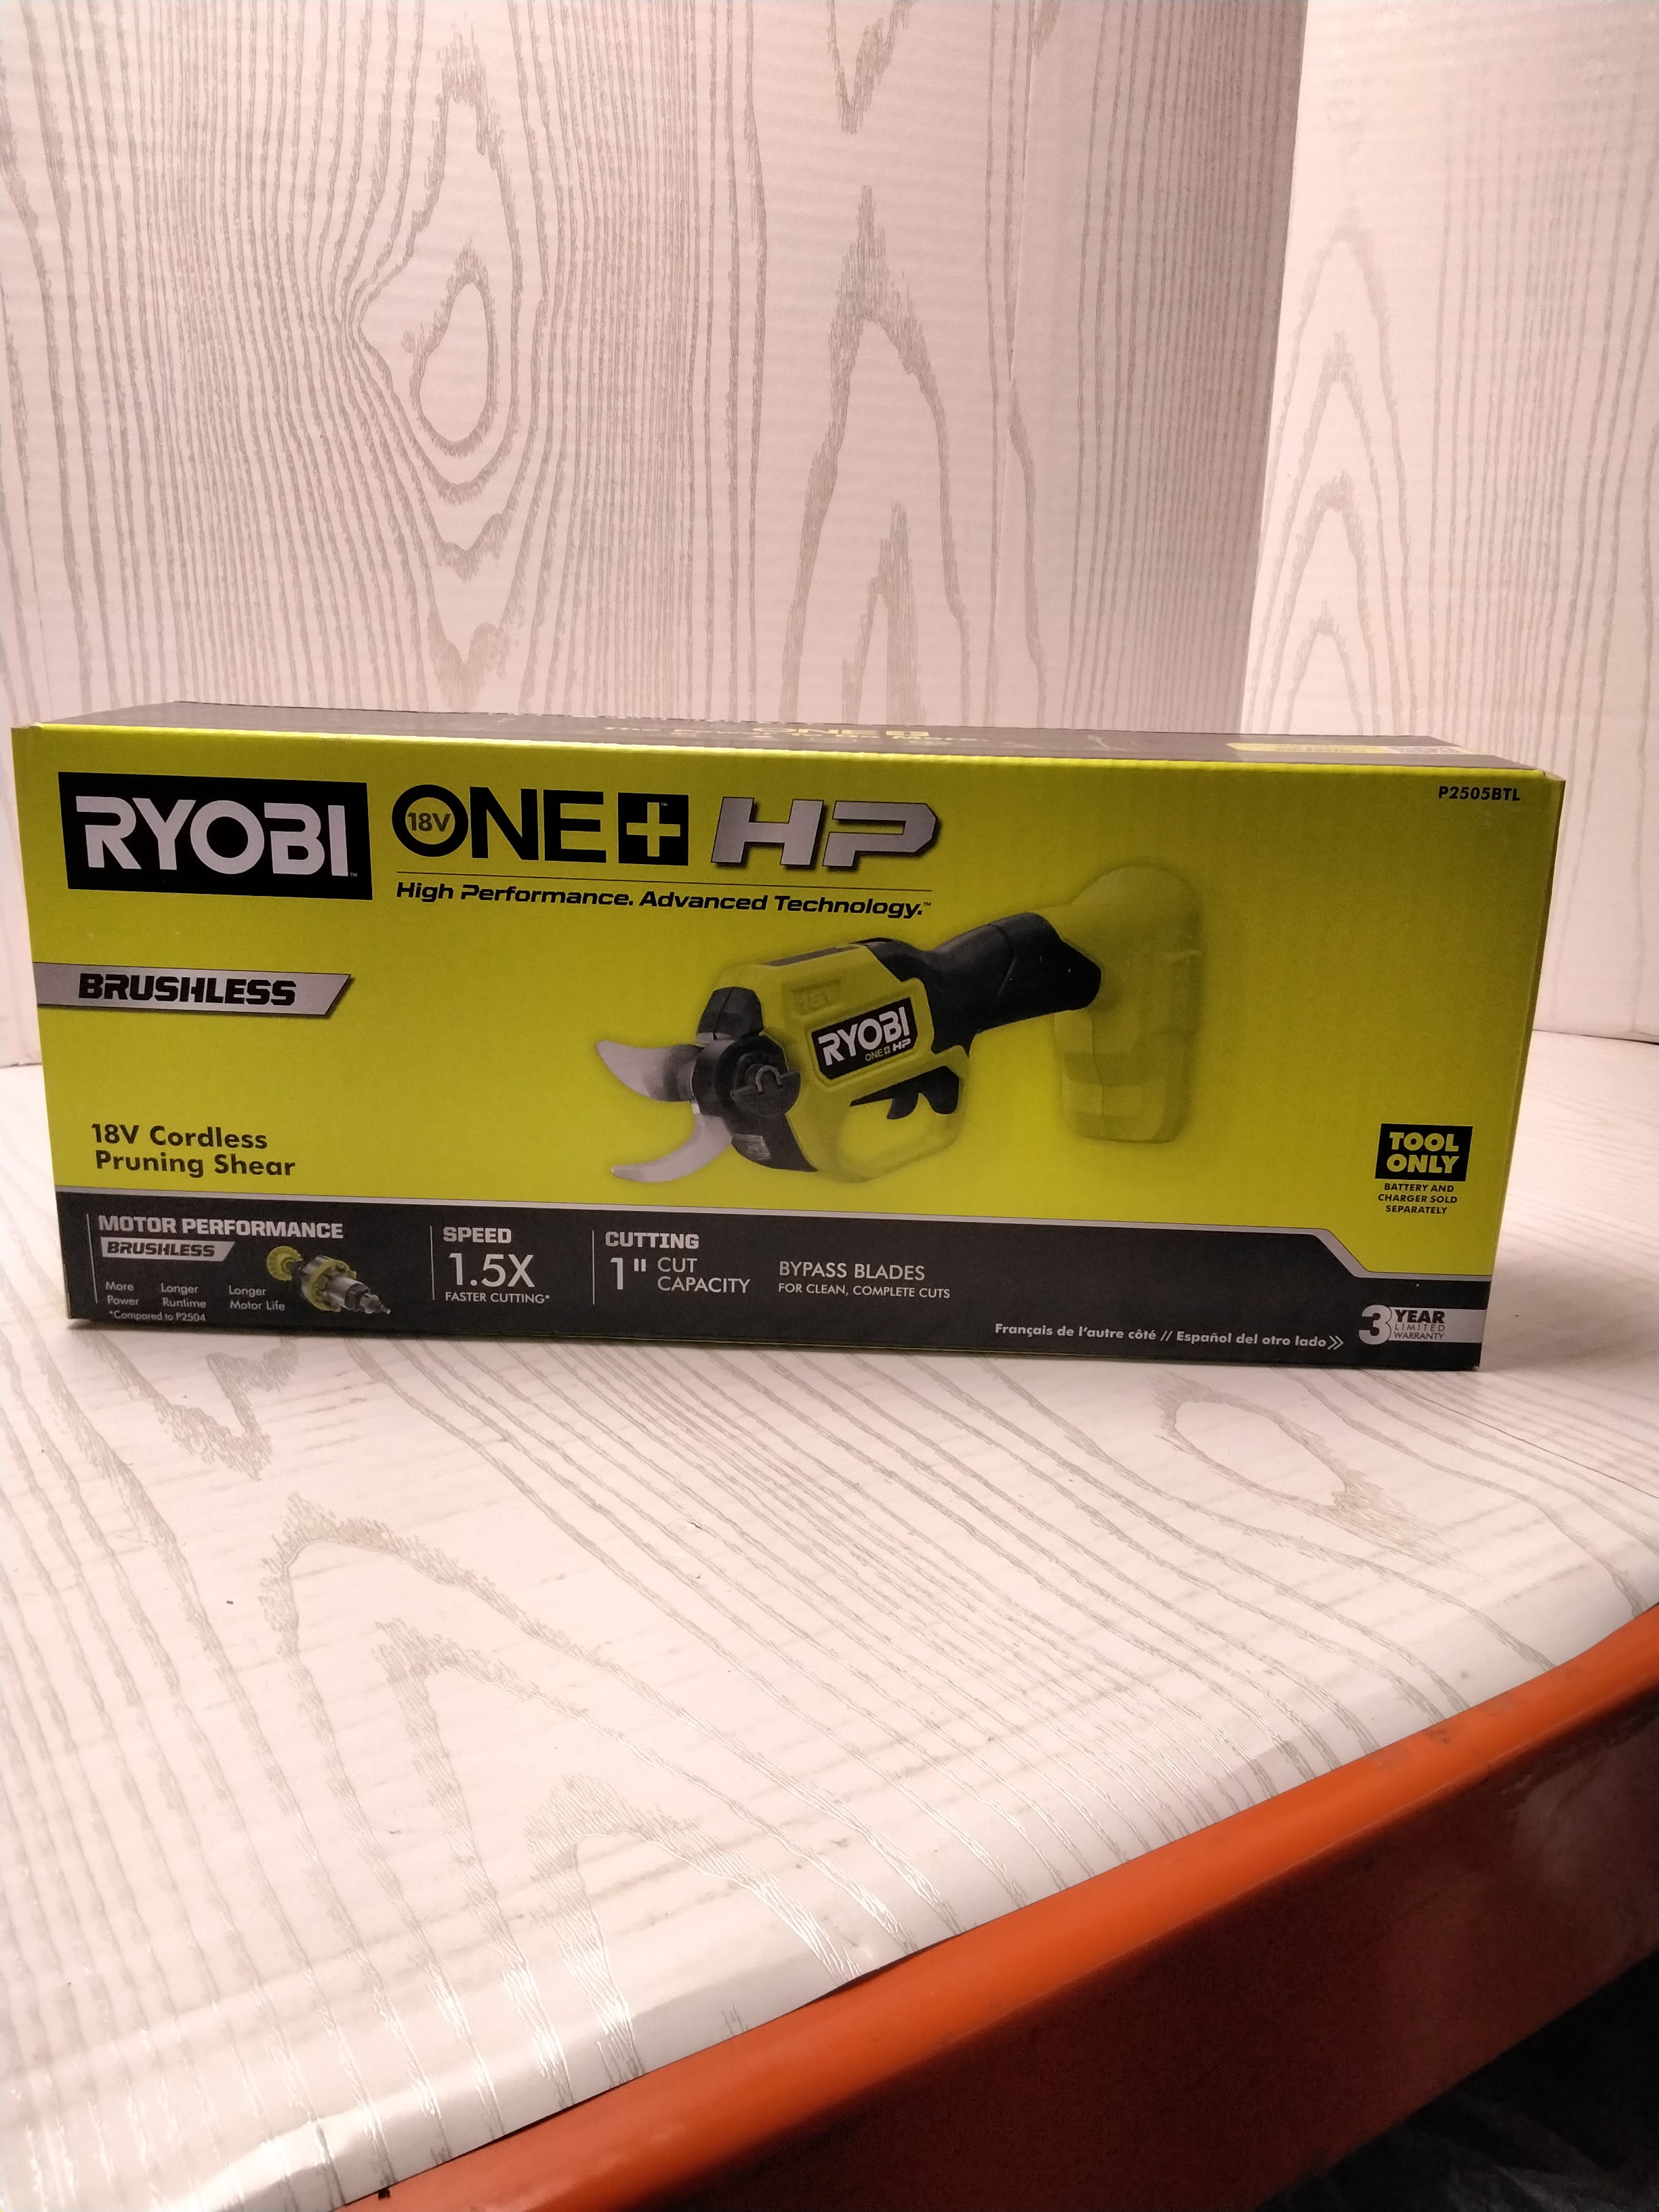 *NEW* RYOBI ONE+ HP 18V Brushless Cordless Pruner (Tool Only) (7923819905262)